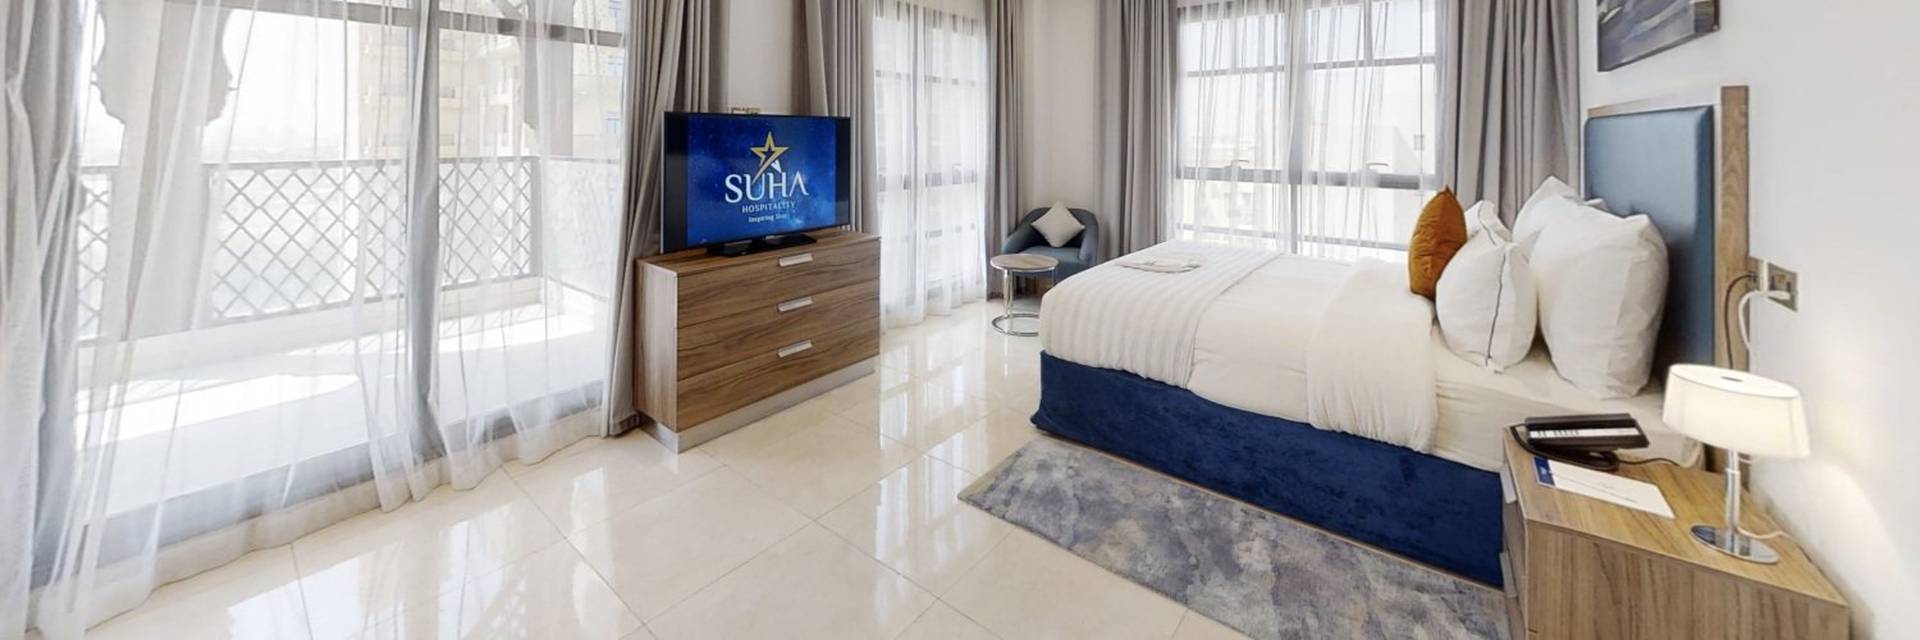 الإقامة سها بارك الفندقية شقق دبي